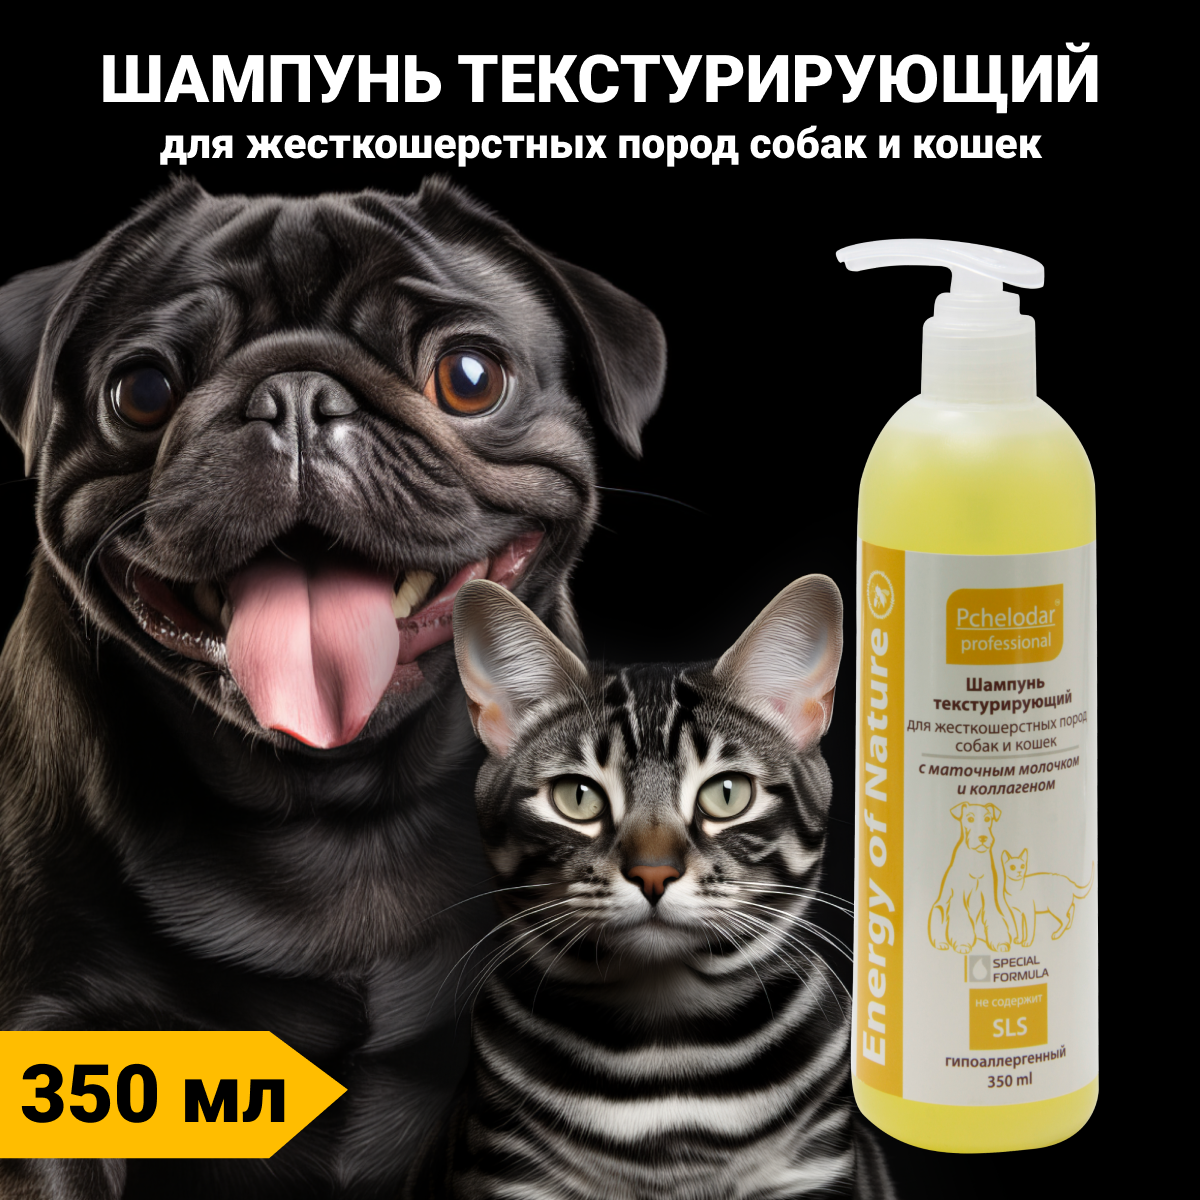 Шампунь для жесткошерстных пород собак и кошек текстурирующий 350 мл